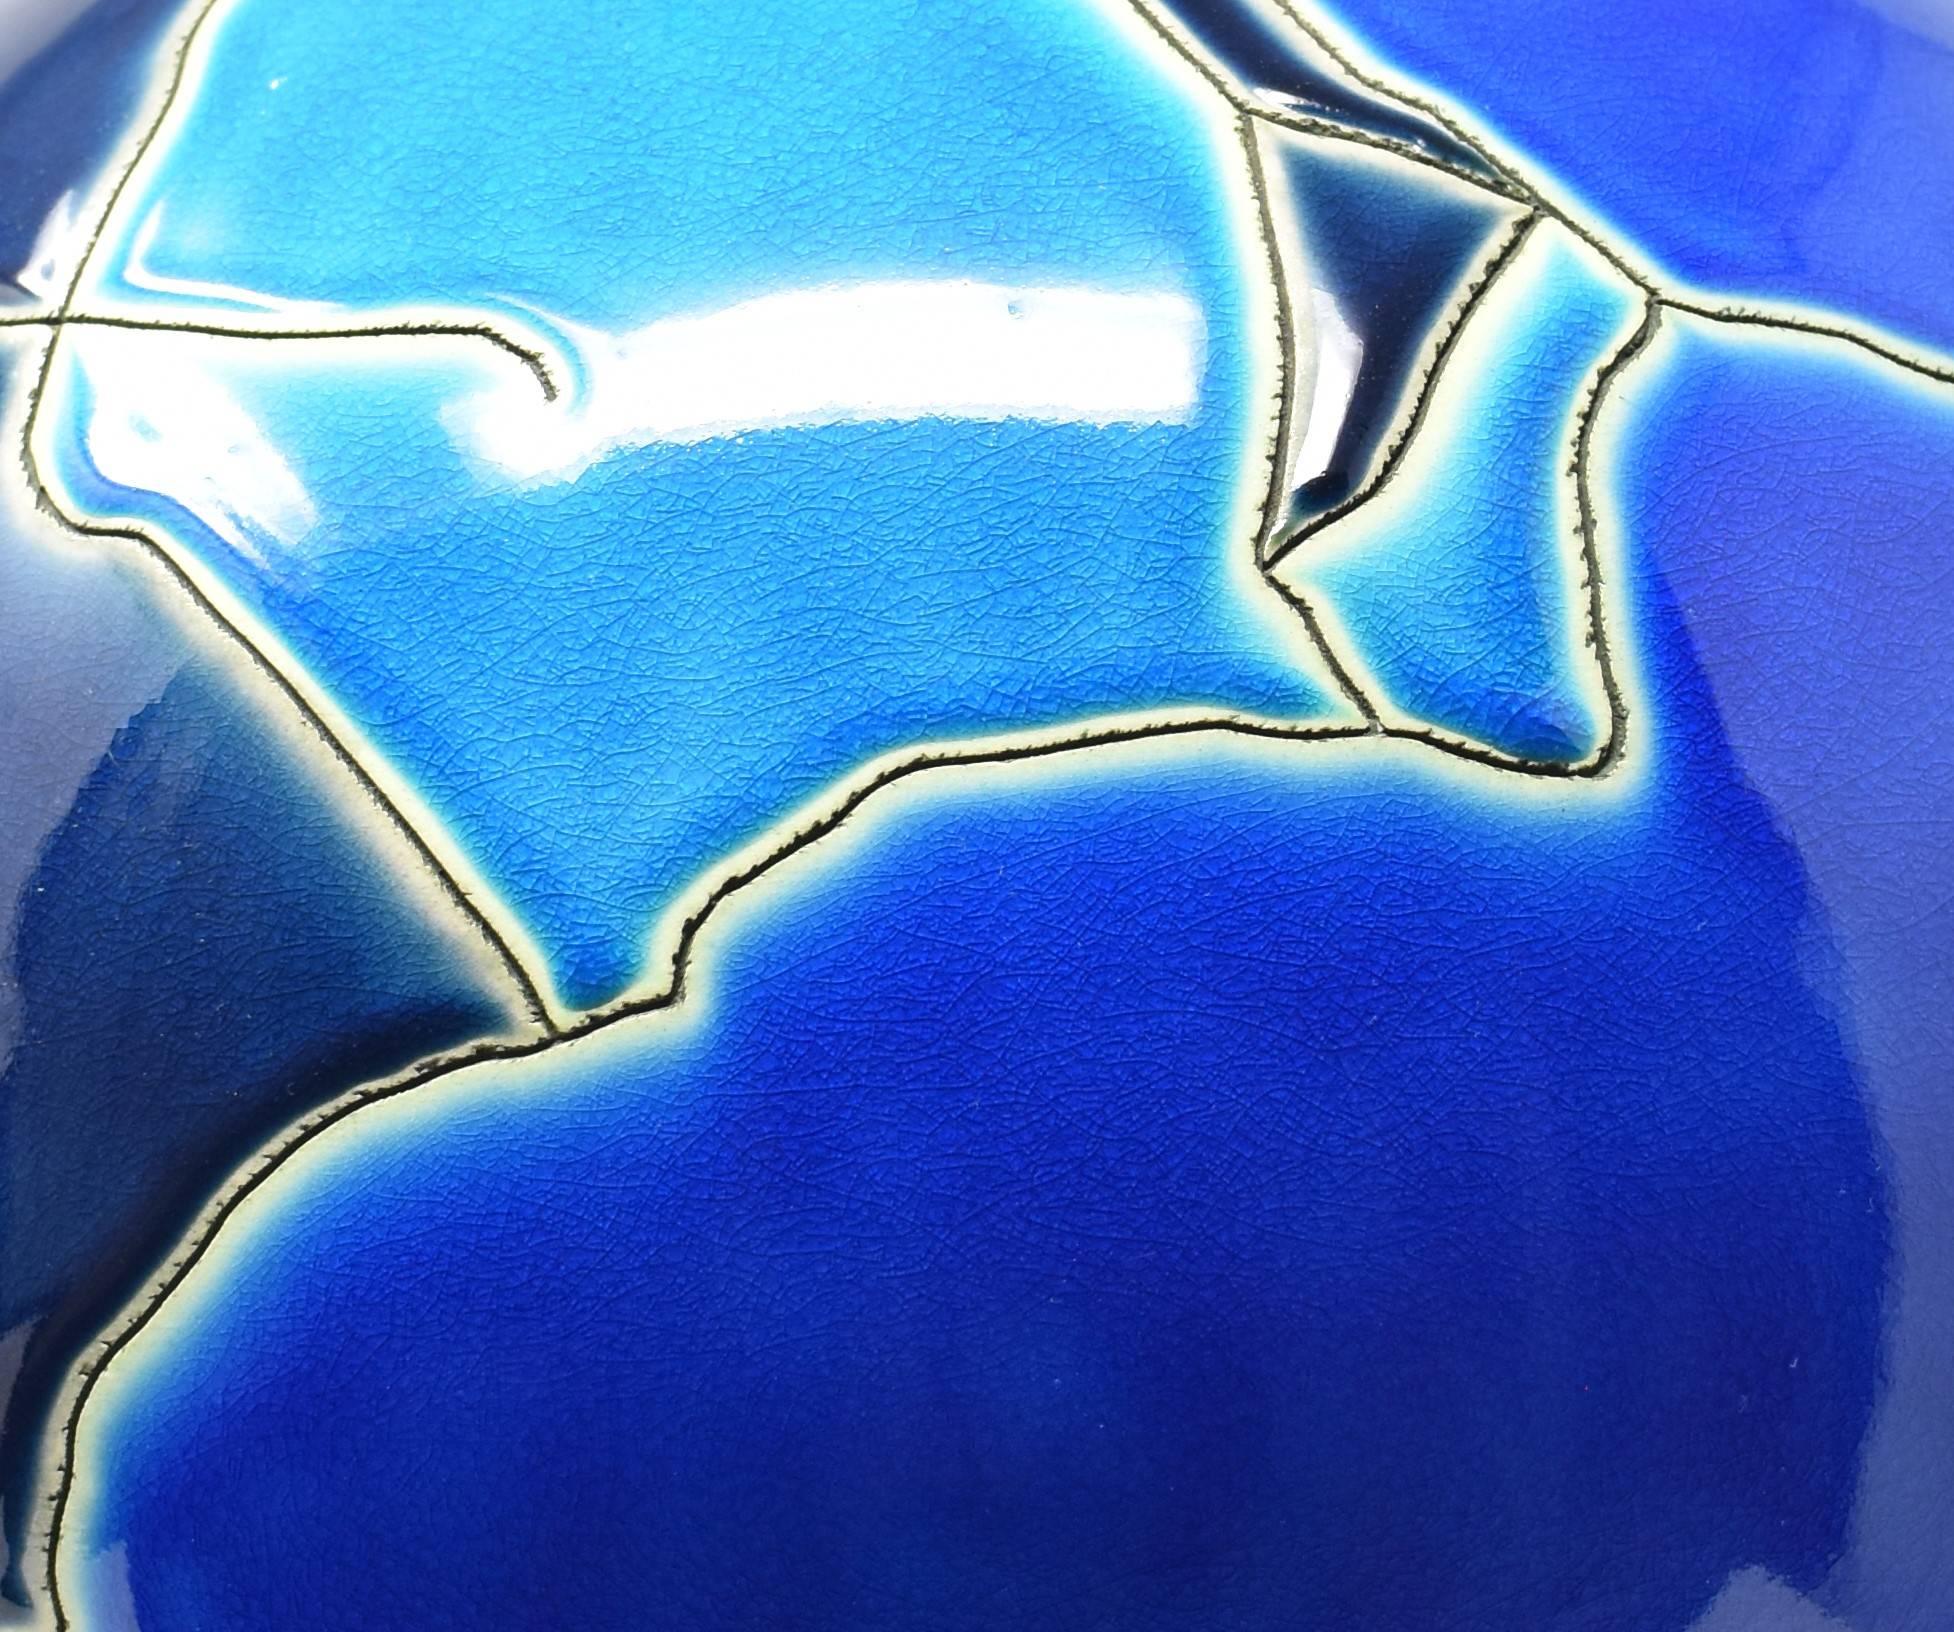 Extraordinaire lampe de table contemporaine japonaise en porcelaine, un chef-d'œuvre époustouflant peint, émaillé et décoré à la main sur un grand corps globulaire en noir, bleu marine, bleu roi et bleu clair avec des gravures profondes pour créer